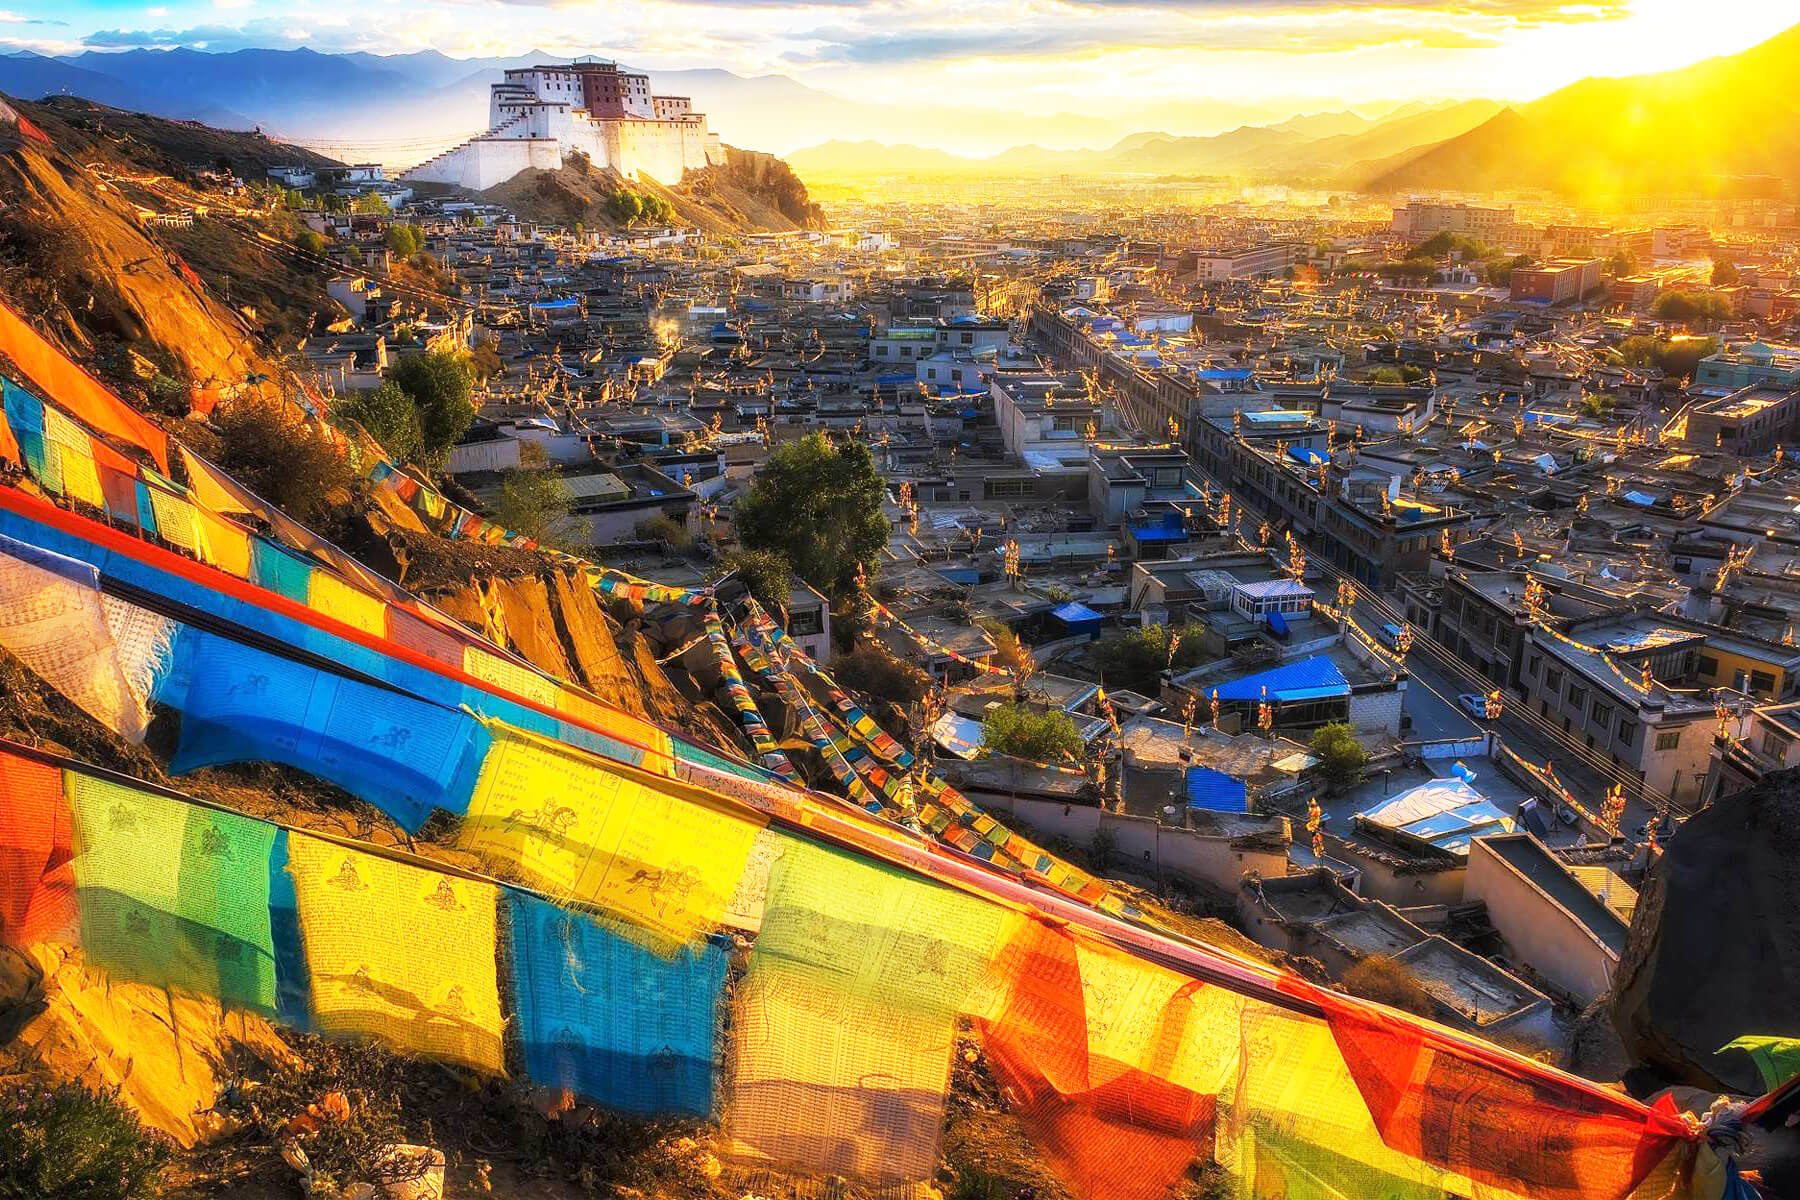 Tour du lịch Lhasa 8 ngày 7 đêm 2022/2023 173938